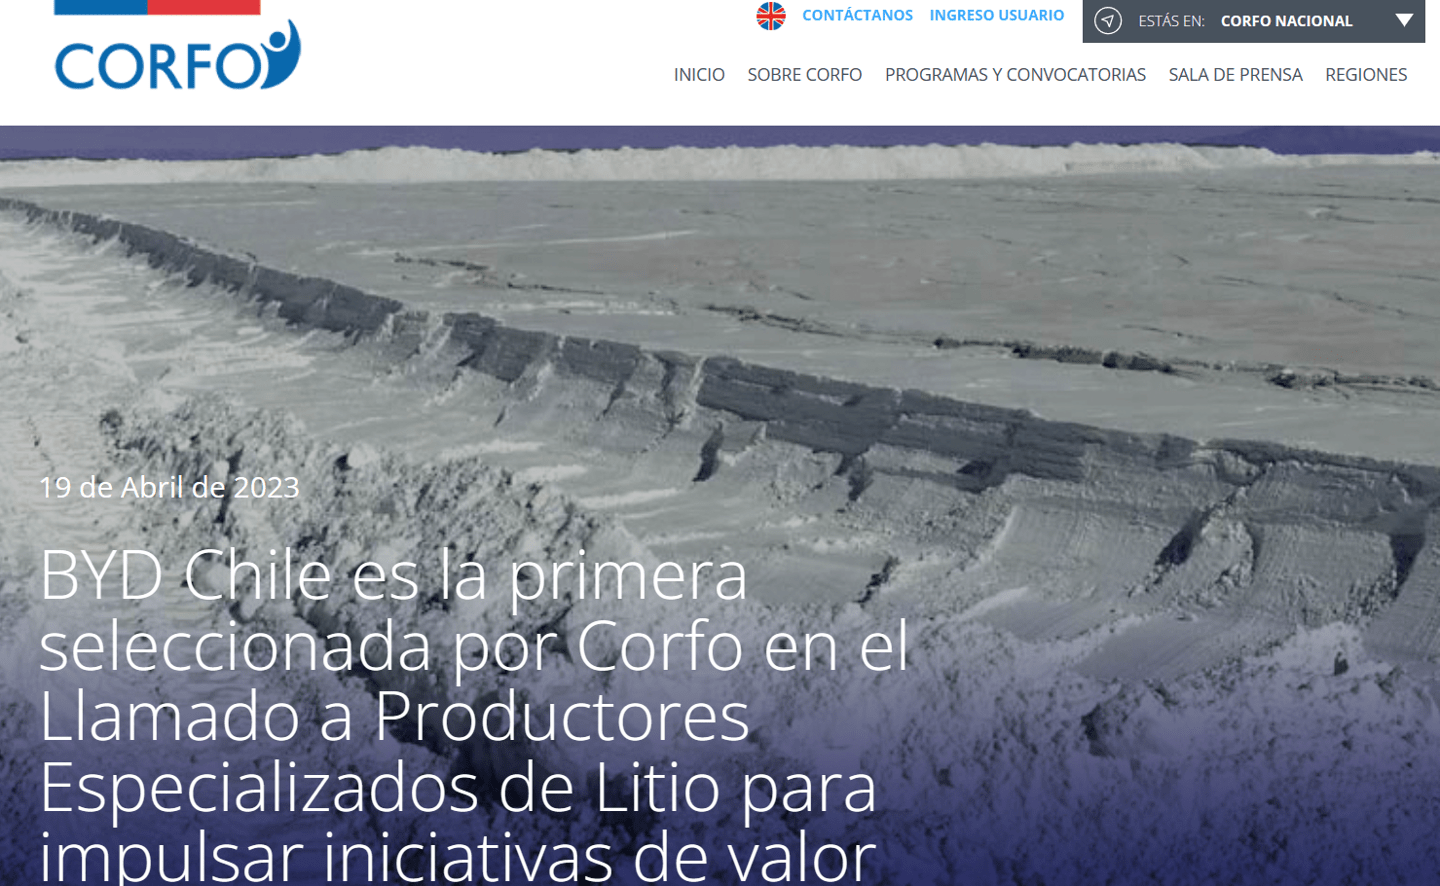 比亞迪拿下鋰礦大戶
，在智利項目獲得鋰電池原料優惠價格